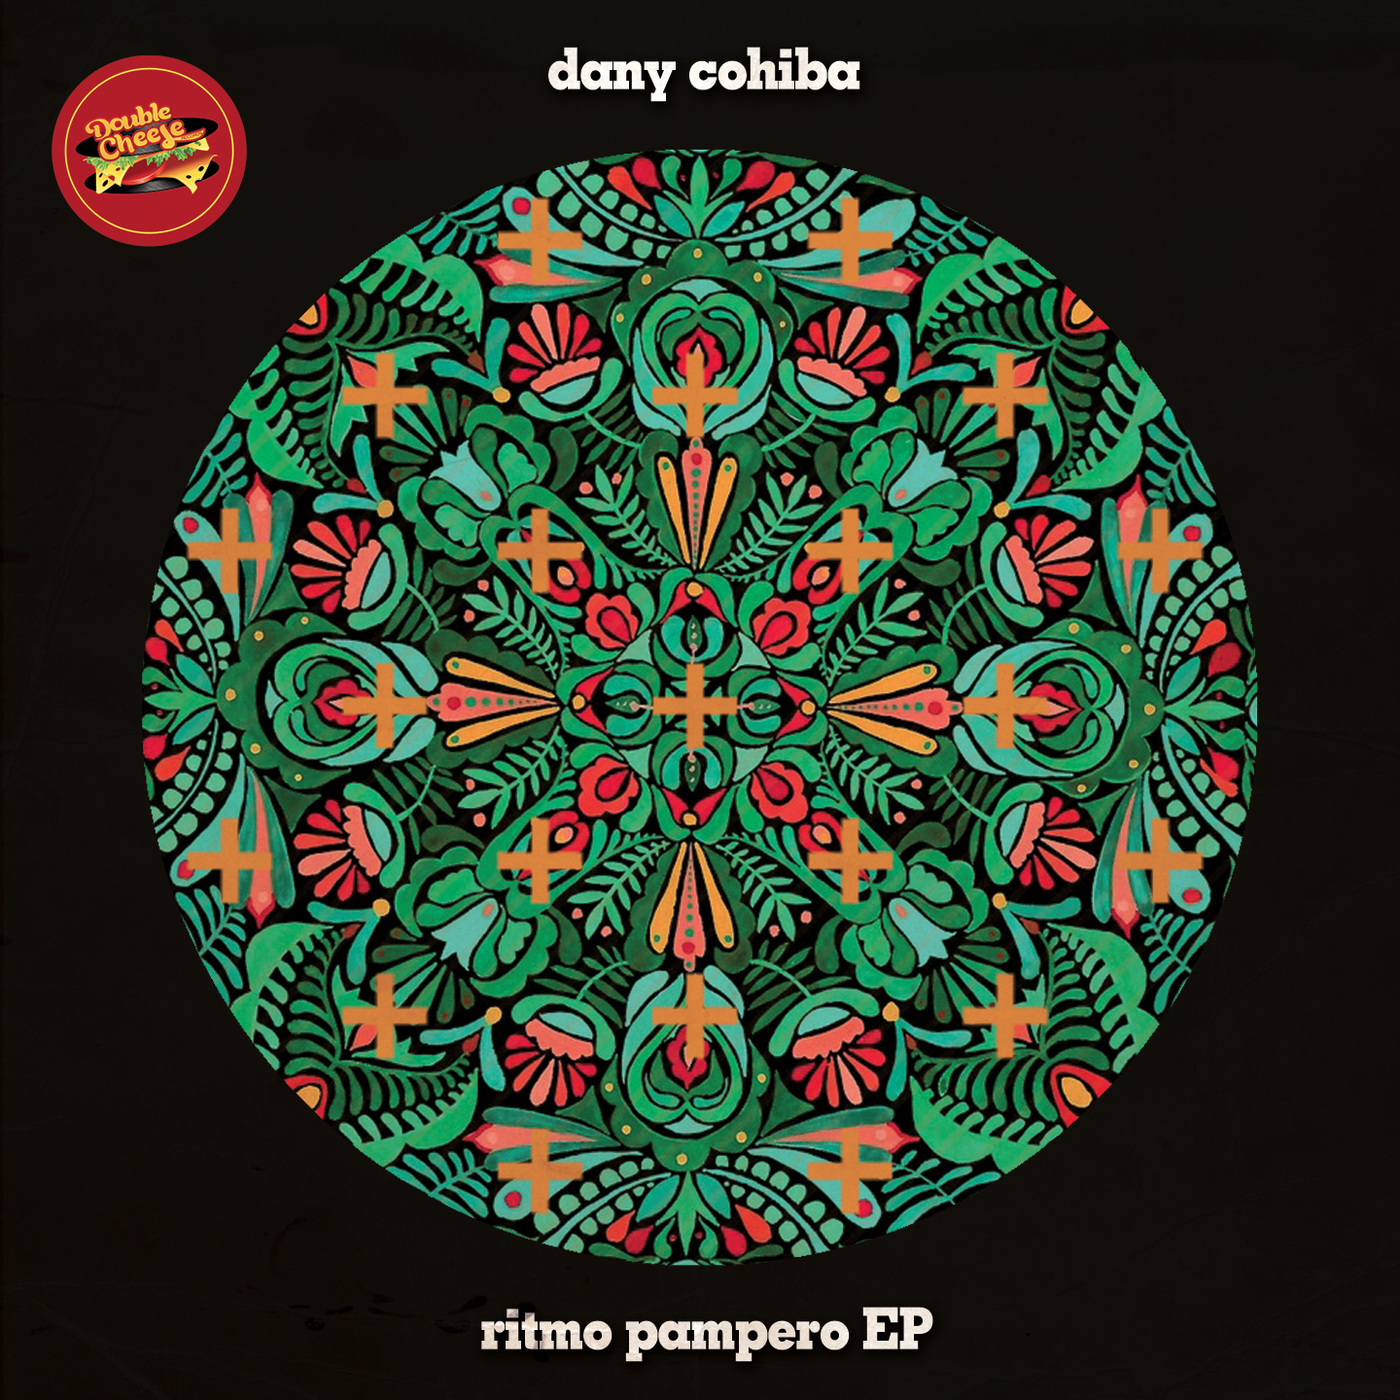 Dany Cohiba - Ritmo Pampero EP / Double Cheese Records